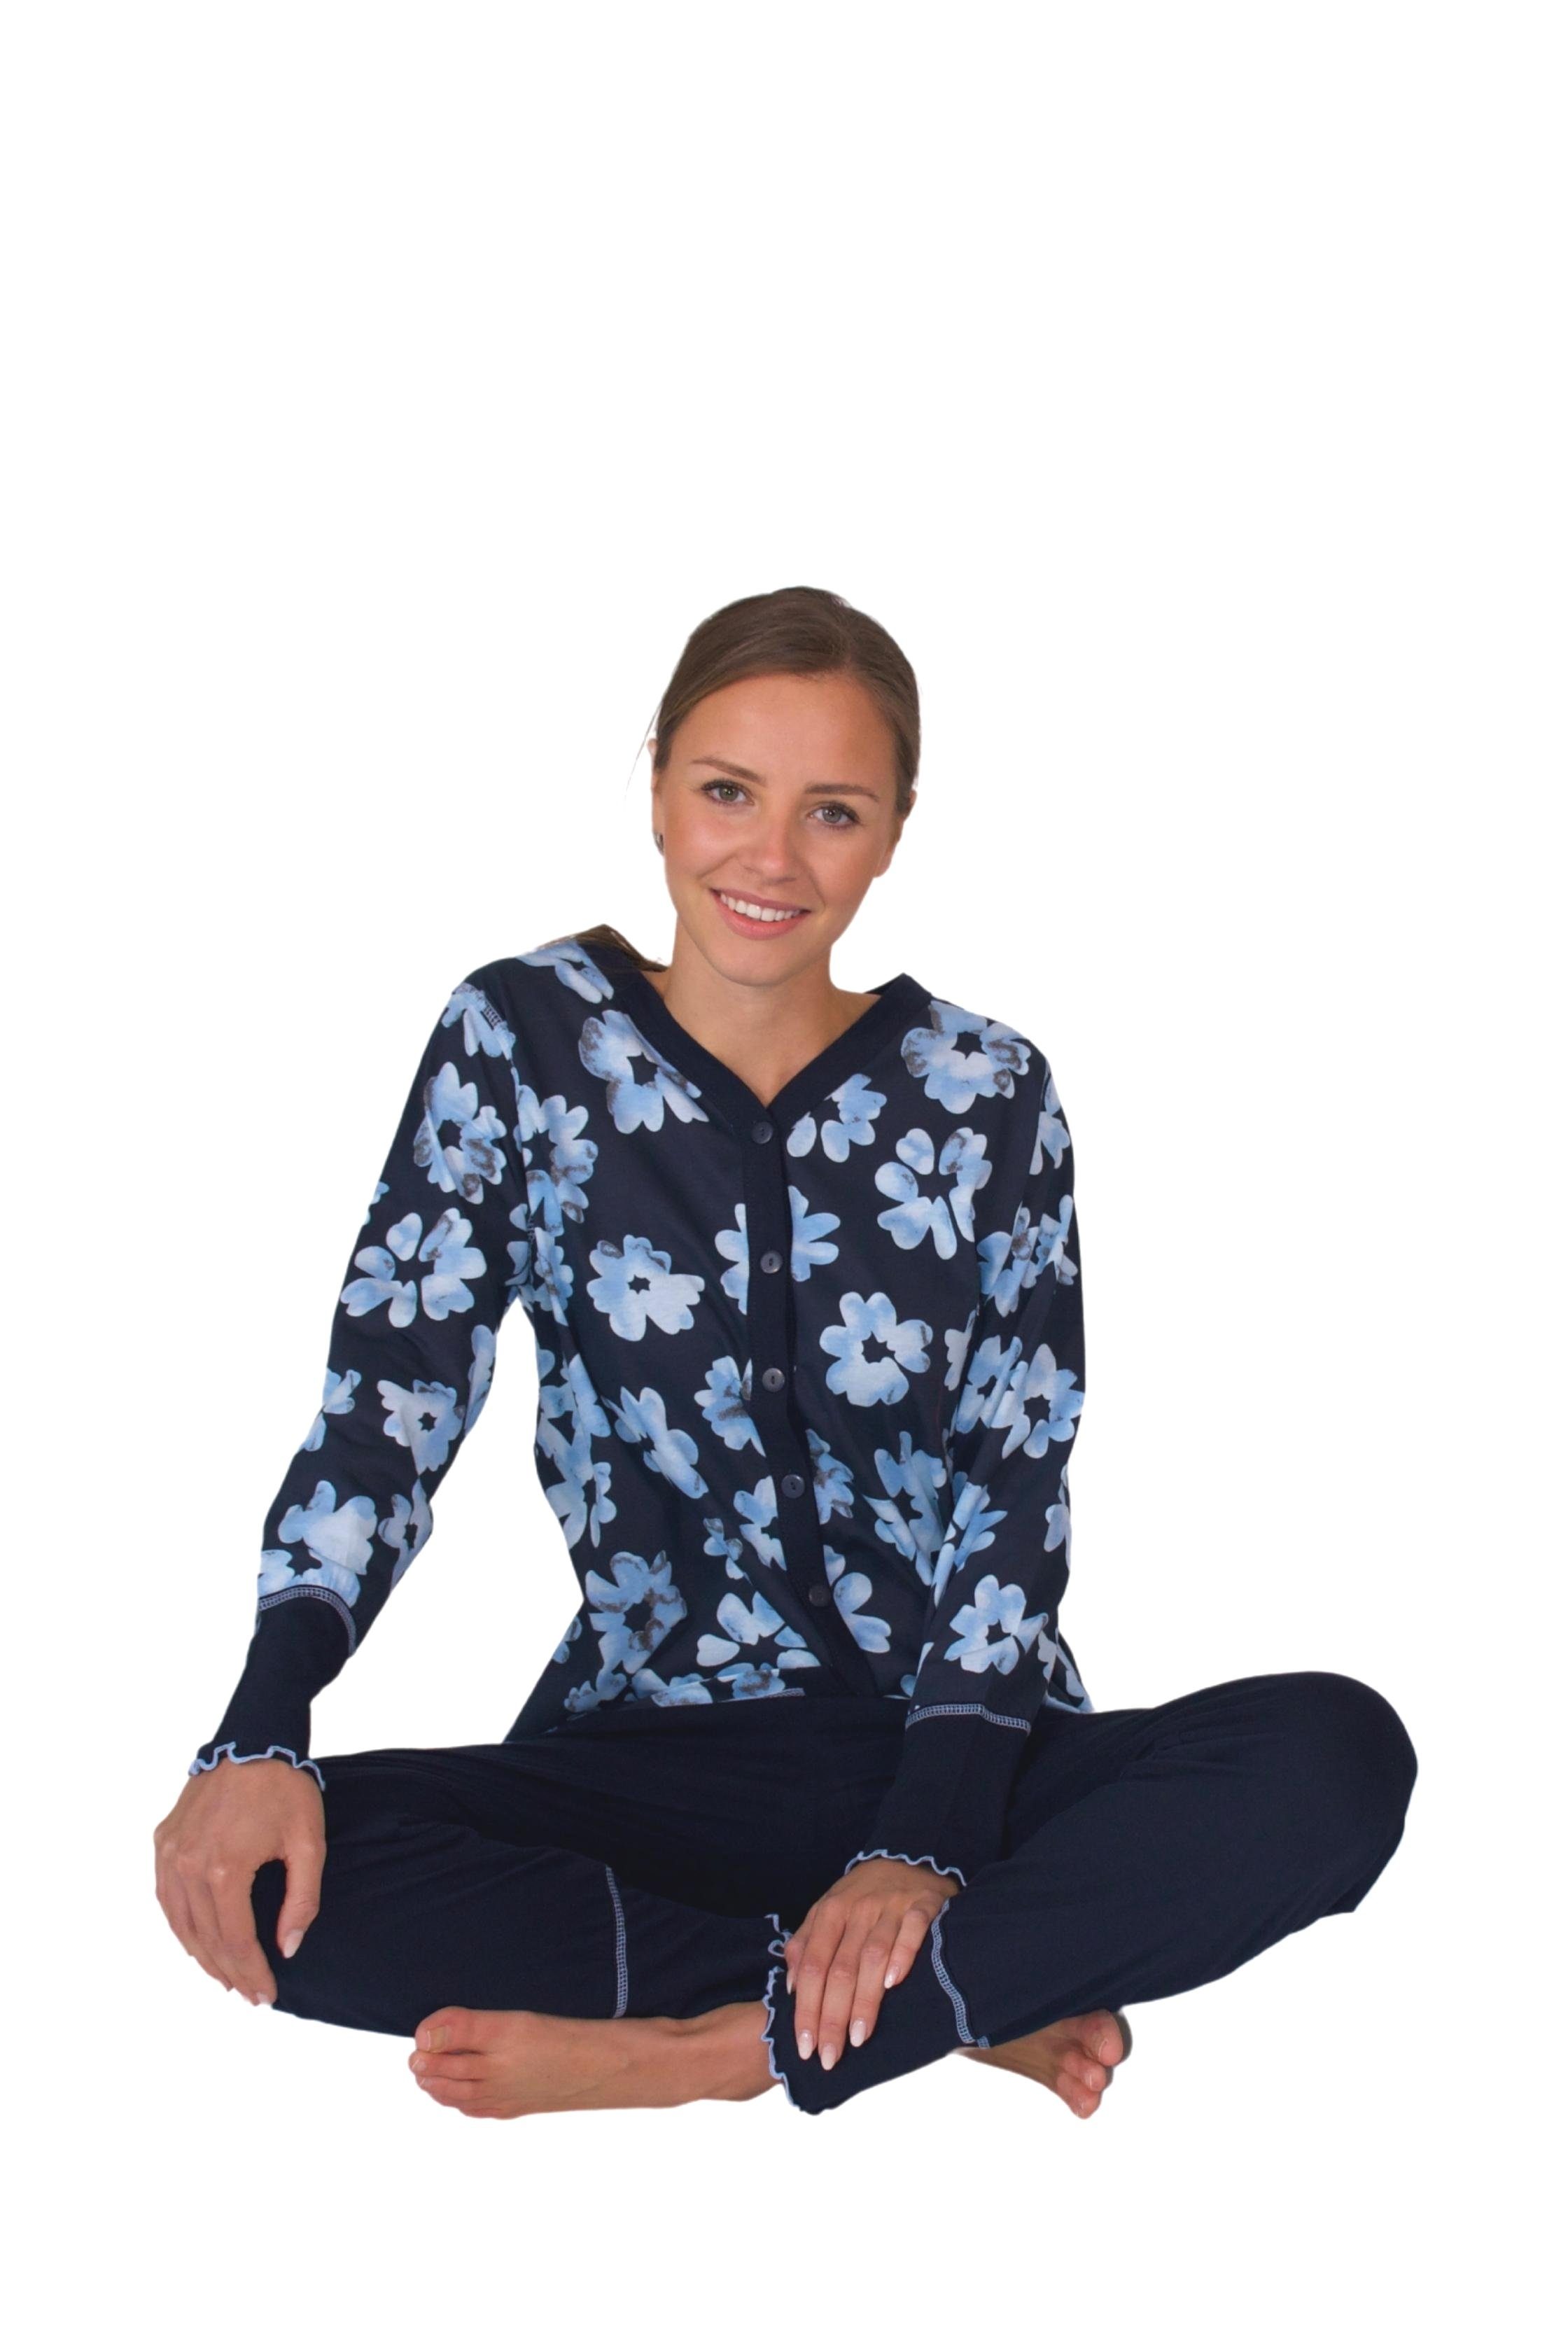 Qualität Damen Schlafanzug Pyjama weicher aus DW311blau Pyjama Consult-Tex Baumwolle-Jersey